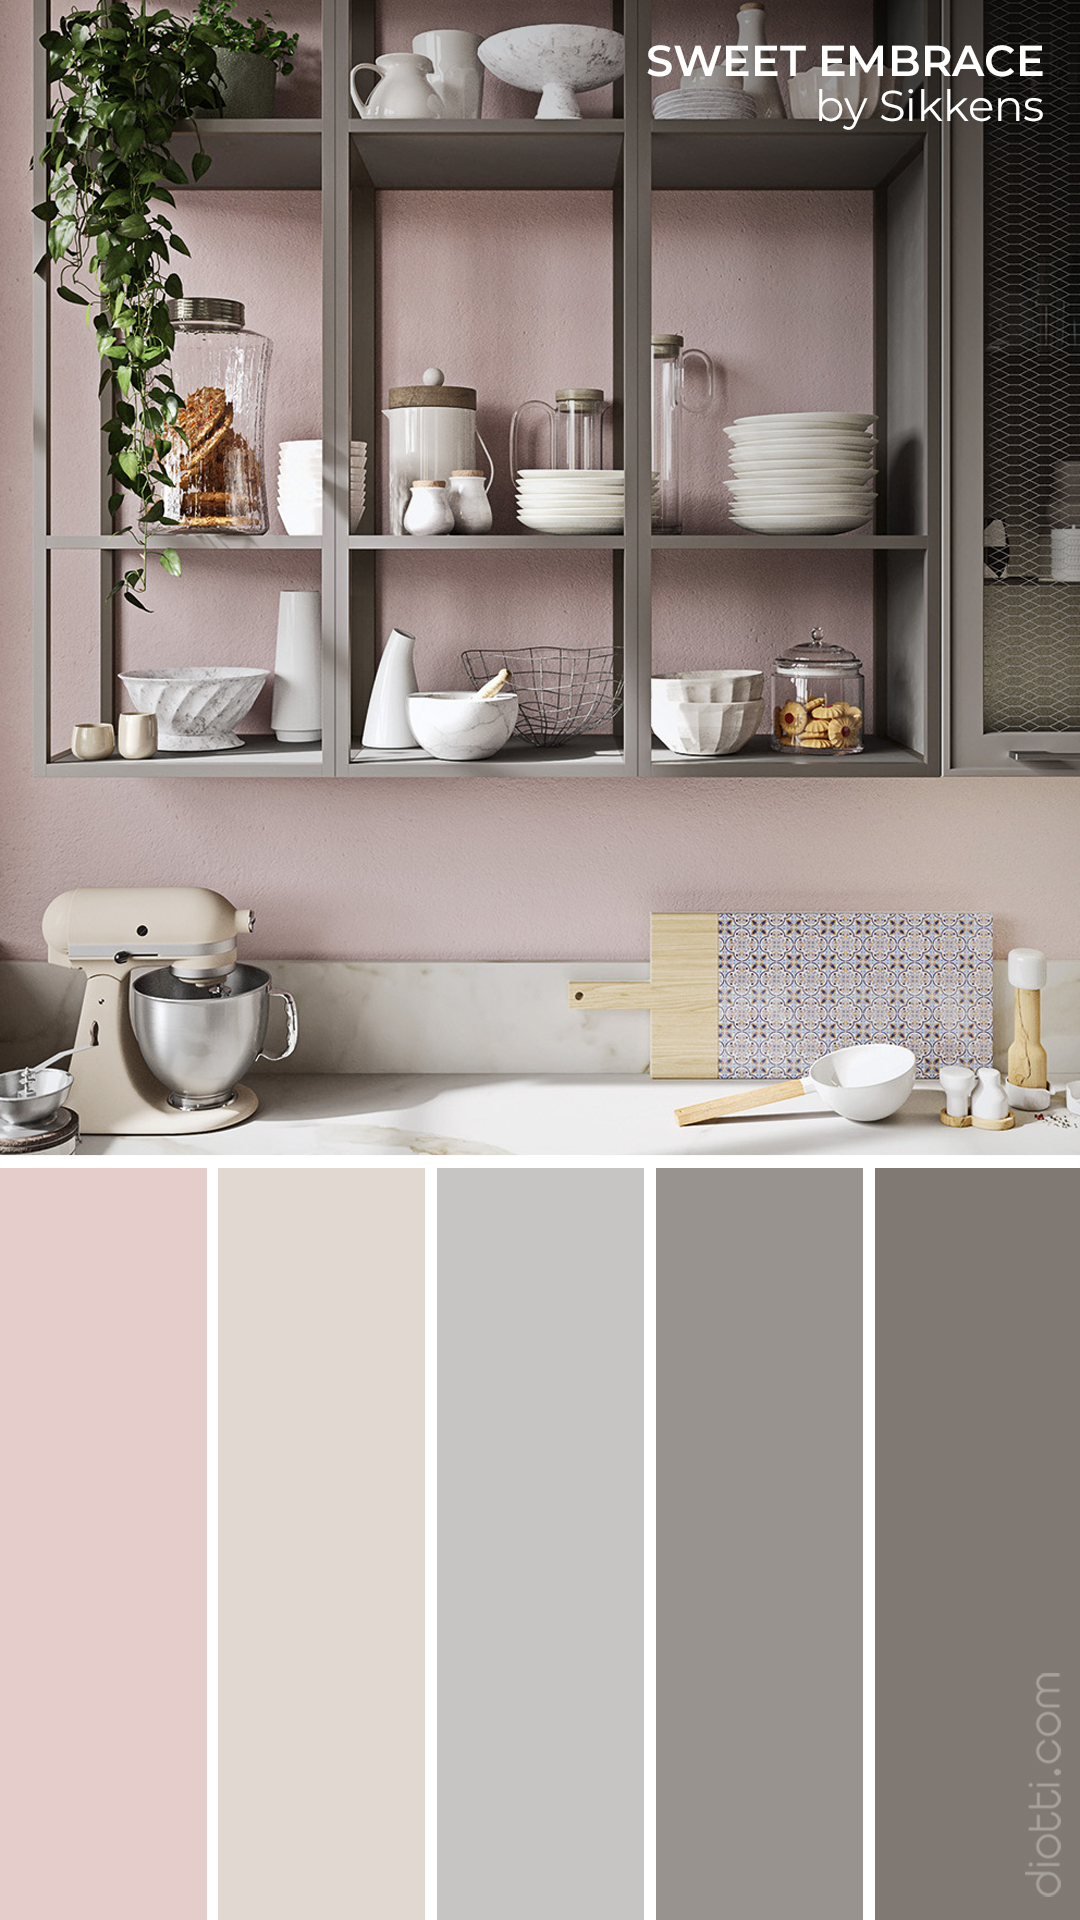 Pensili cucina con telaio in metallo verniciato grigio appesi a parete rosa chiaro